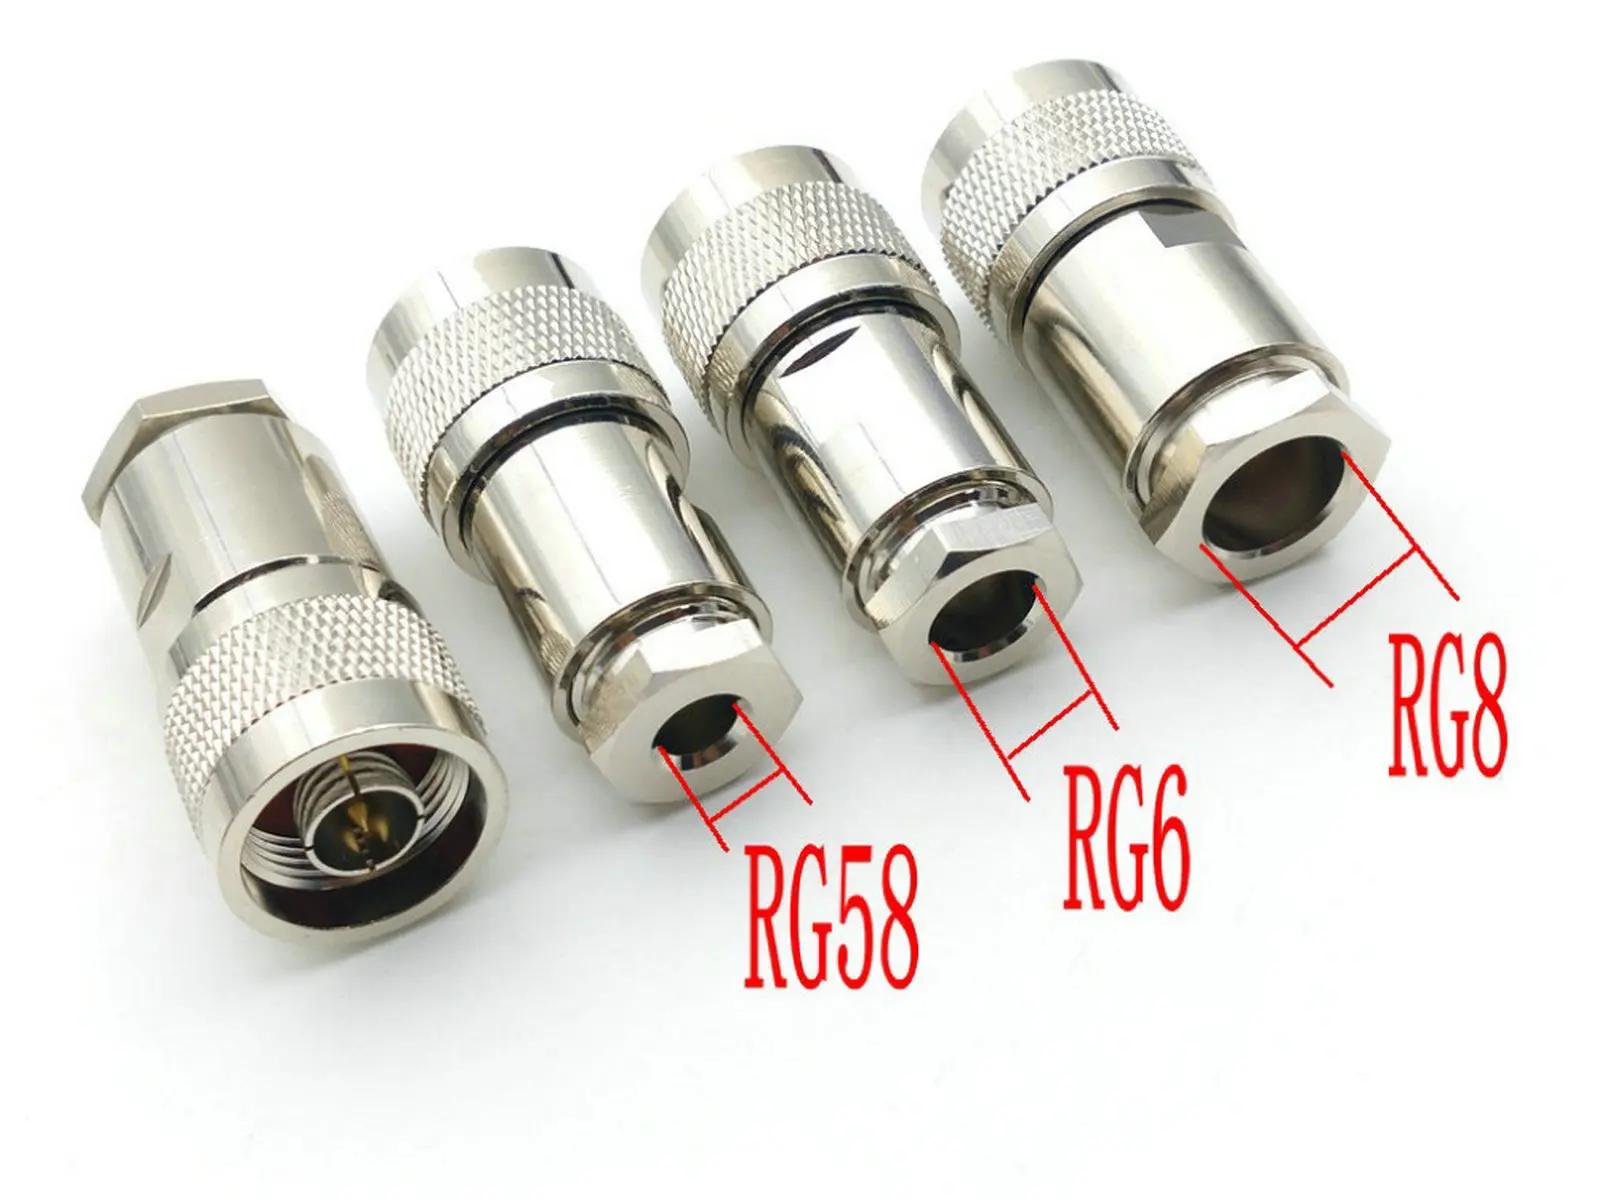  N  ÷ RF  Ŀ Ŭ, RG58, RG6, RG8  ̺